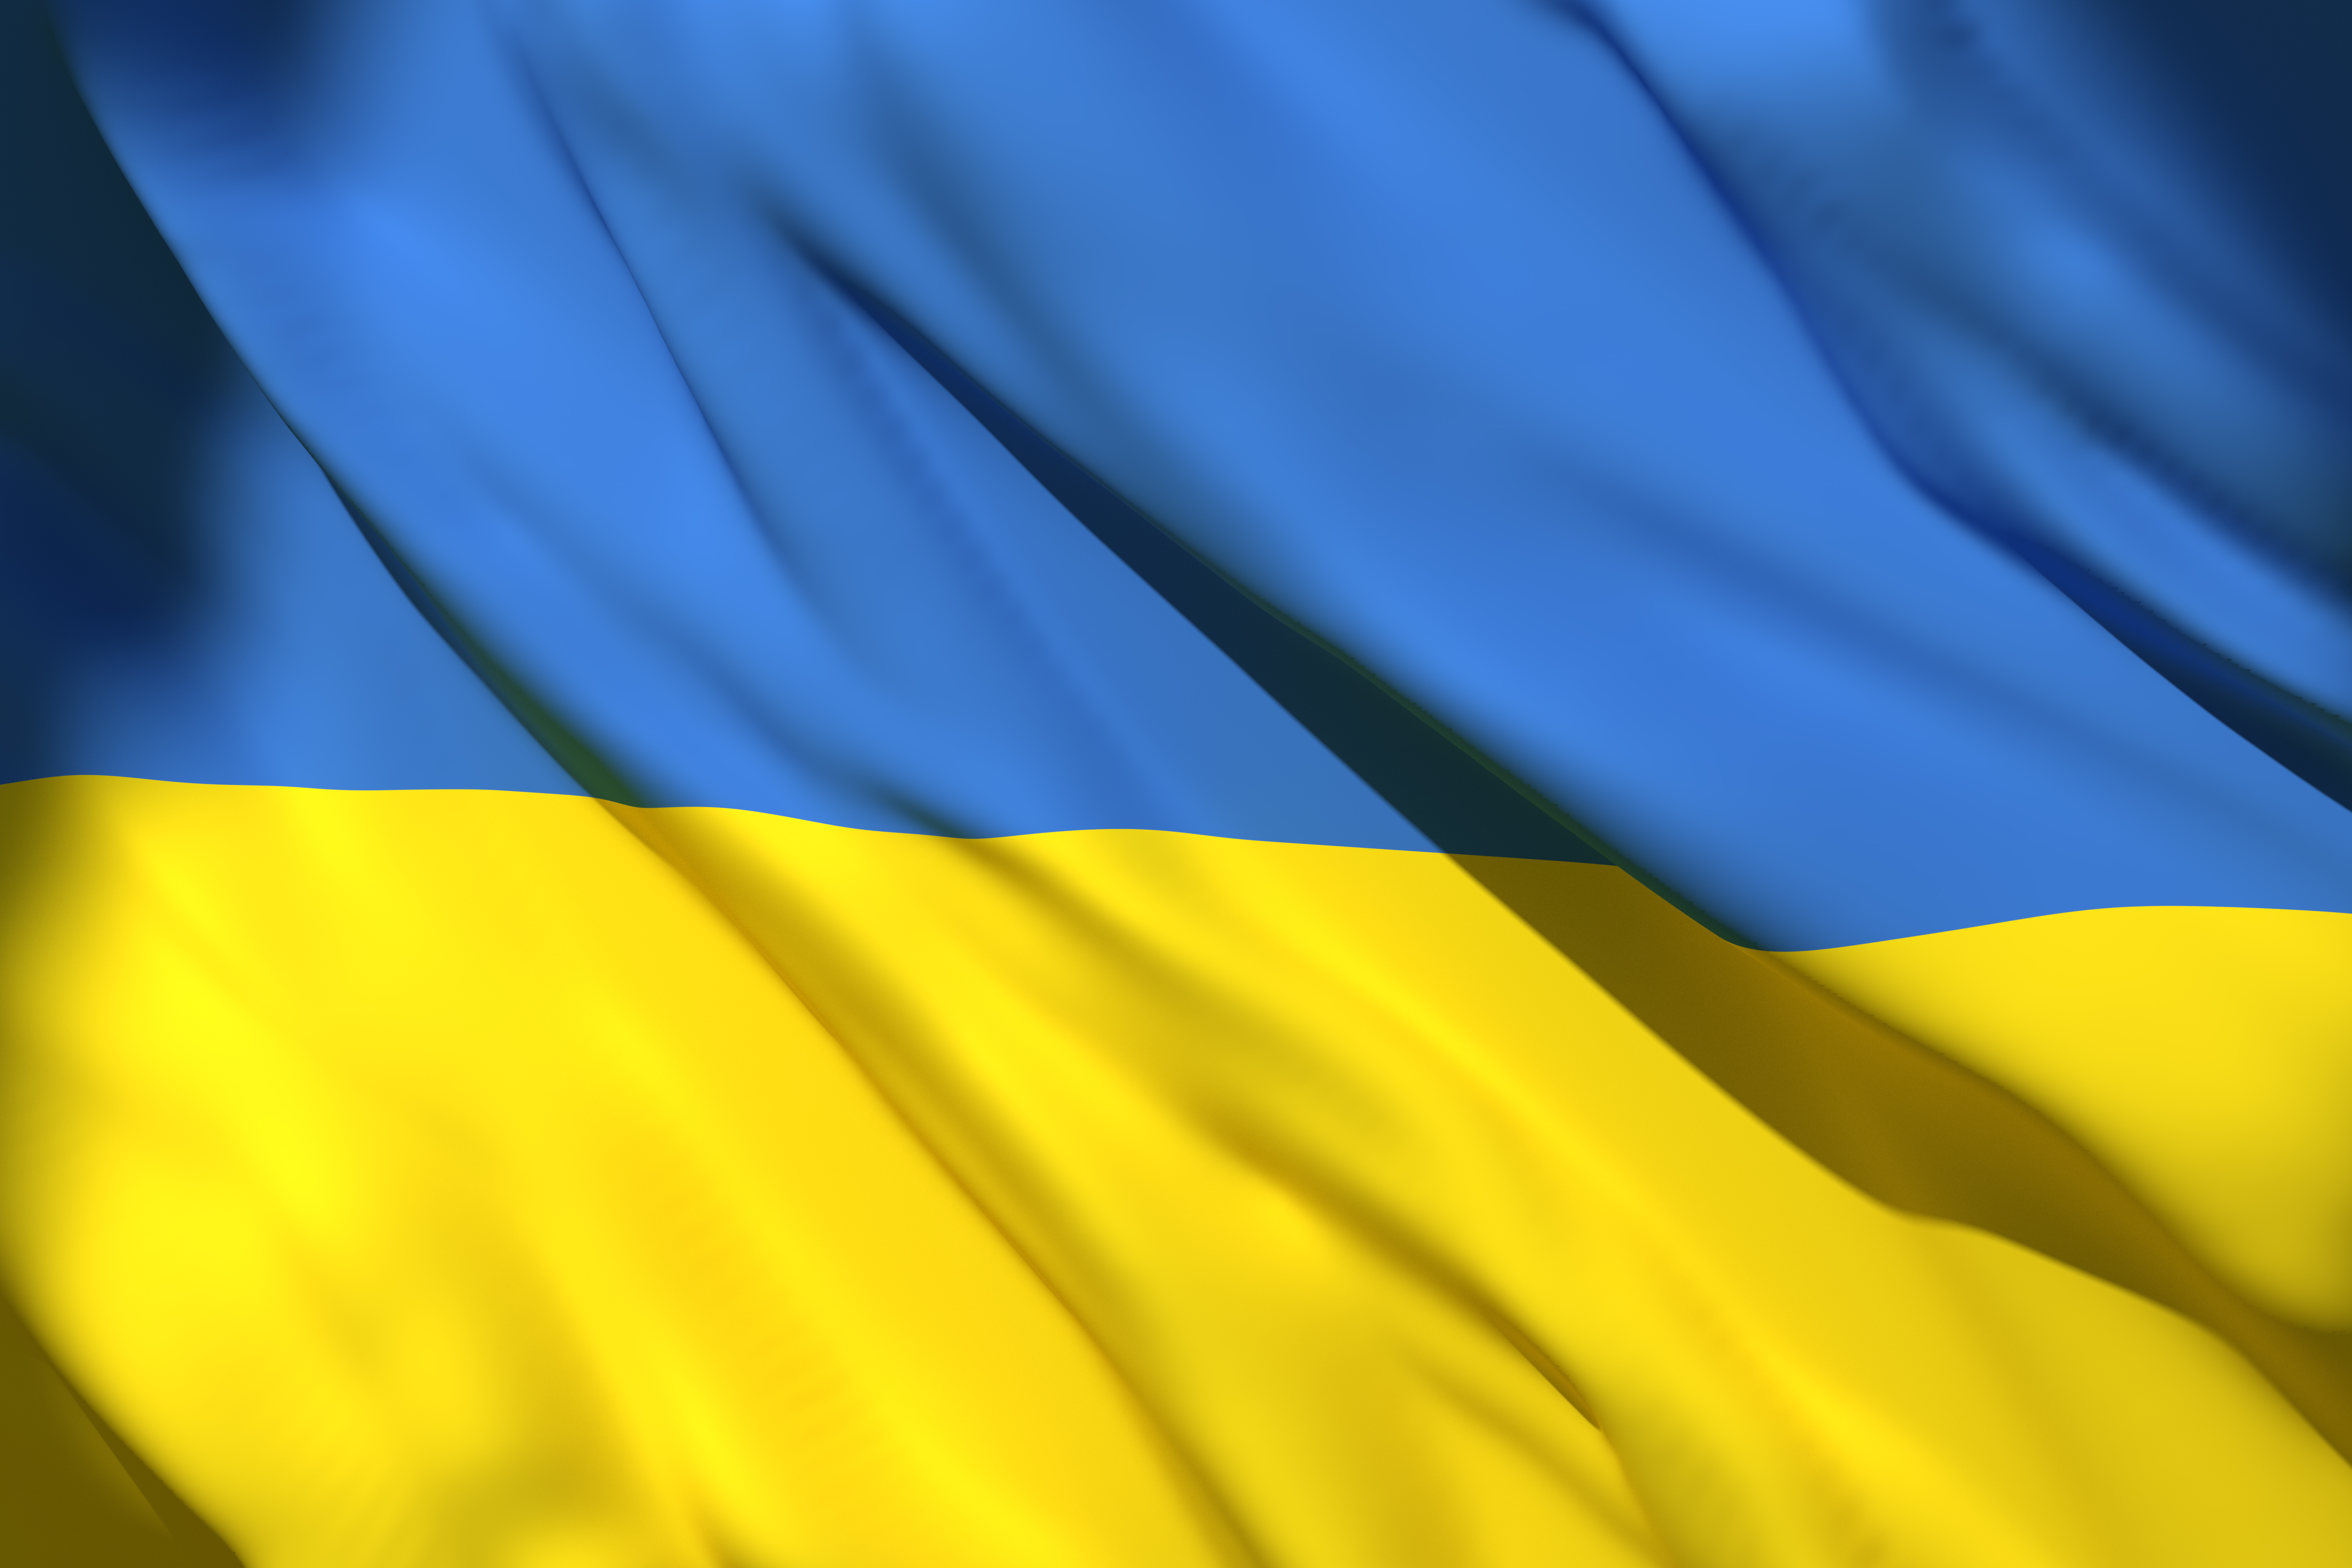 Ukraine Flag (1)